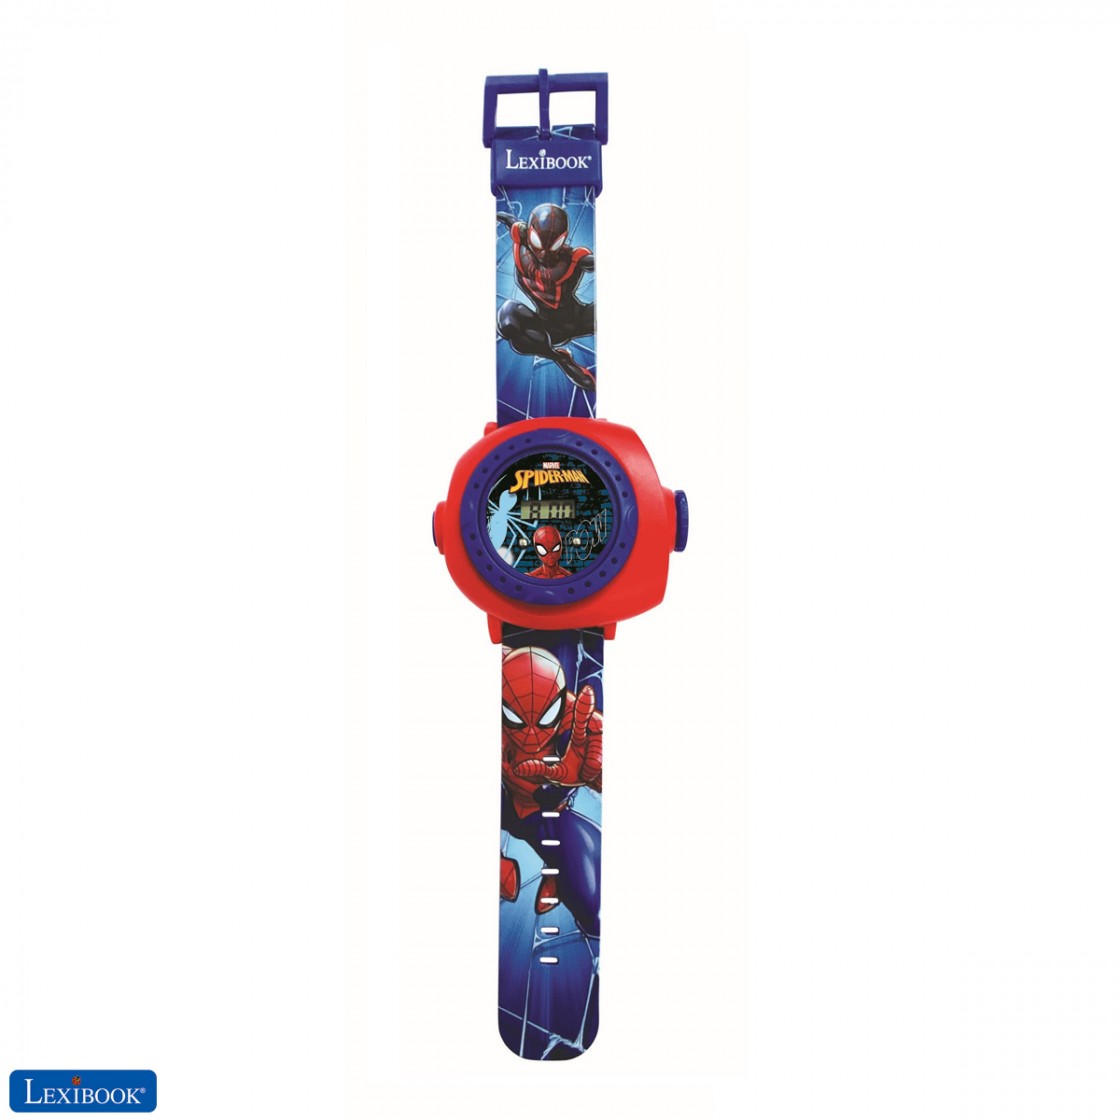 LEXIBOOK LCD Spiderman - 17 cm - Fiche technique, prix et avis